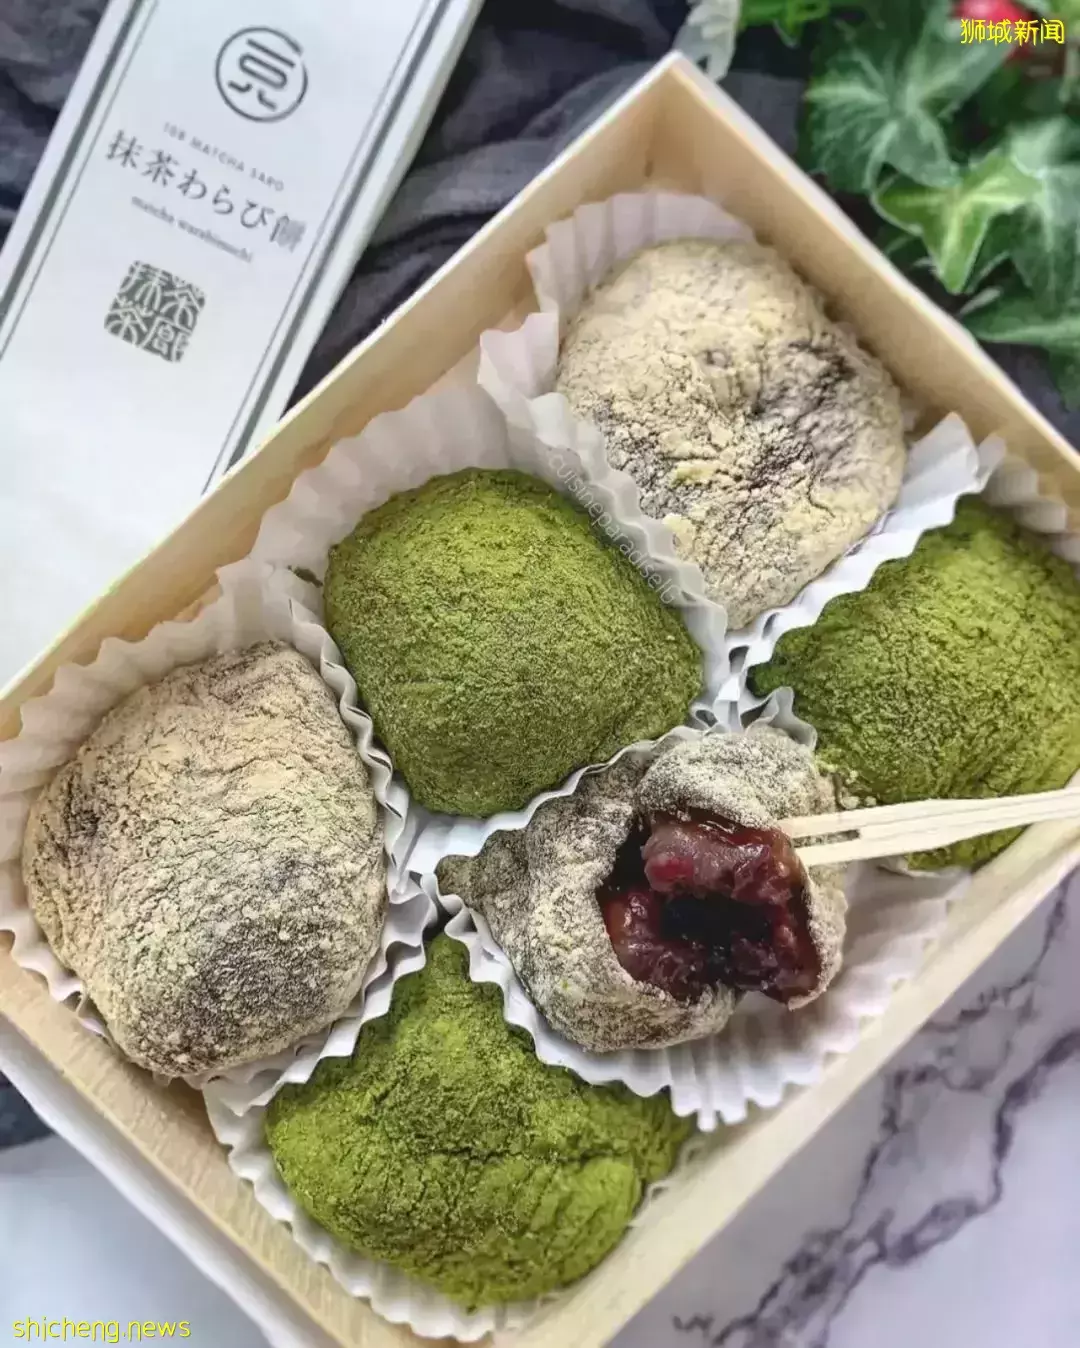 又苦又甜的快乐~新加坡5家最IN抹茶甜品店推荐